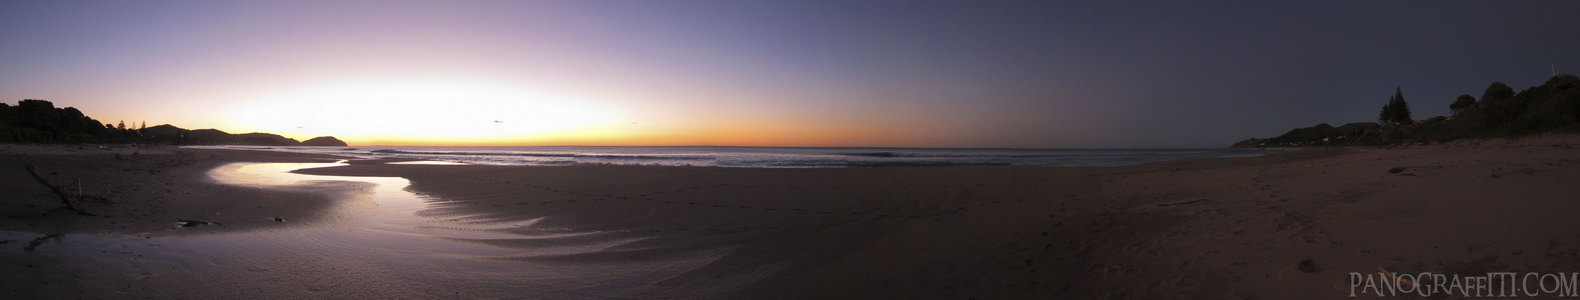 Wainui Beach Sunrise - An eary start for a 6:30 am sunrise on Wainui Beach in Gisborne